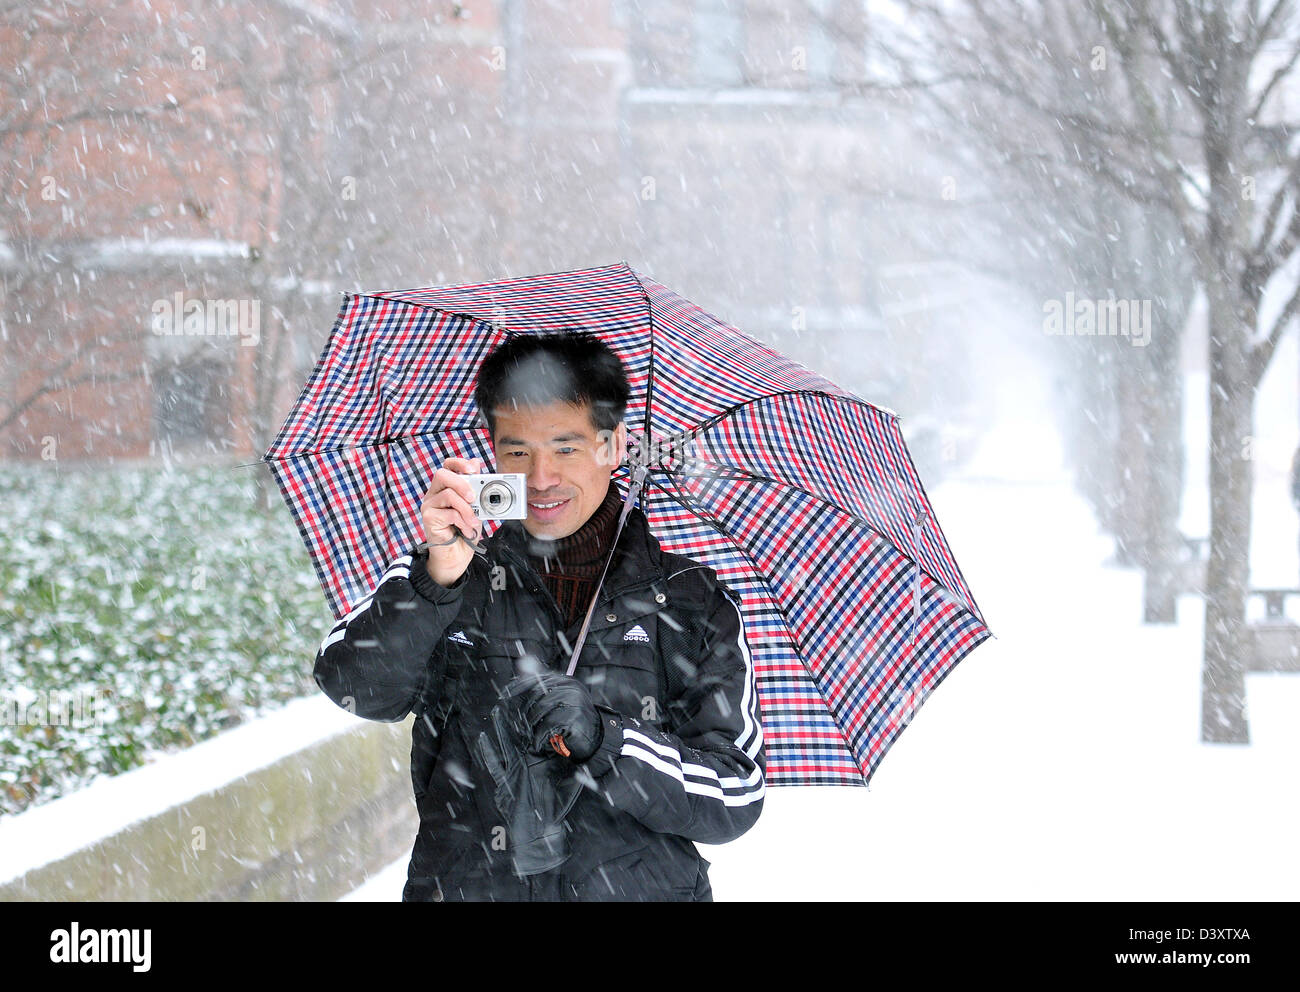 Yale estudiante de China goza de una tormenta de nieve en New Haven CT USA tomando fotografías con una cámara digital. Foto de stock